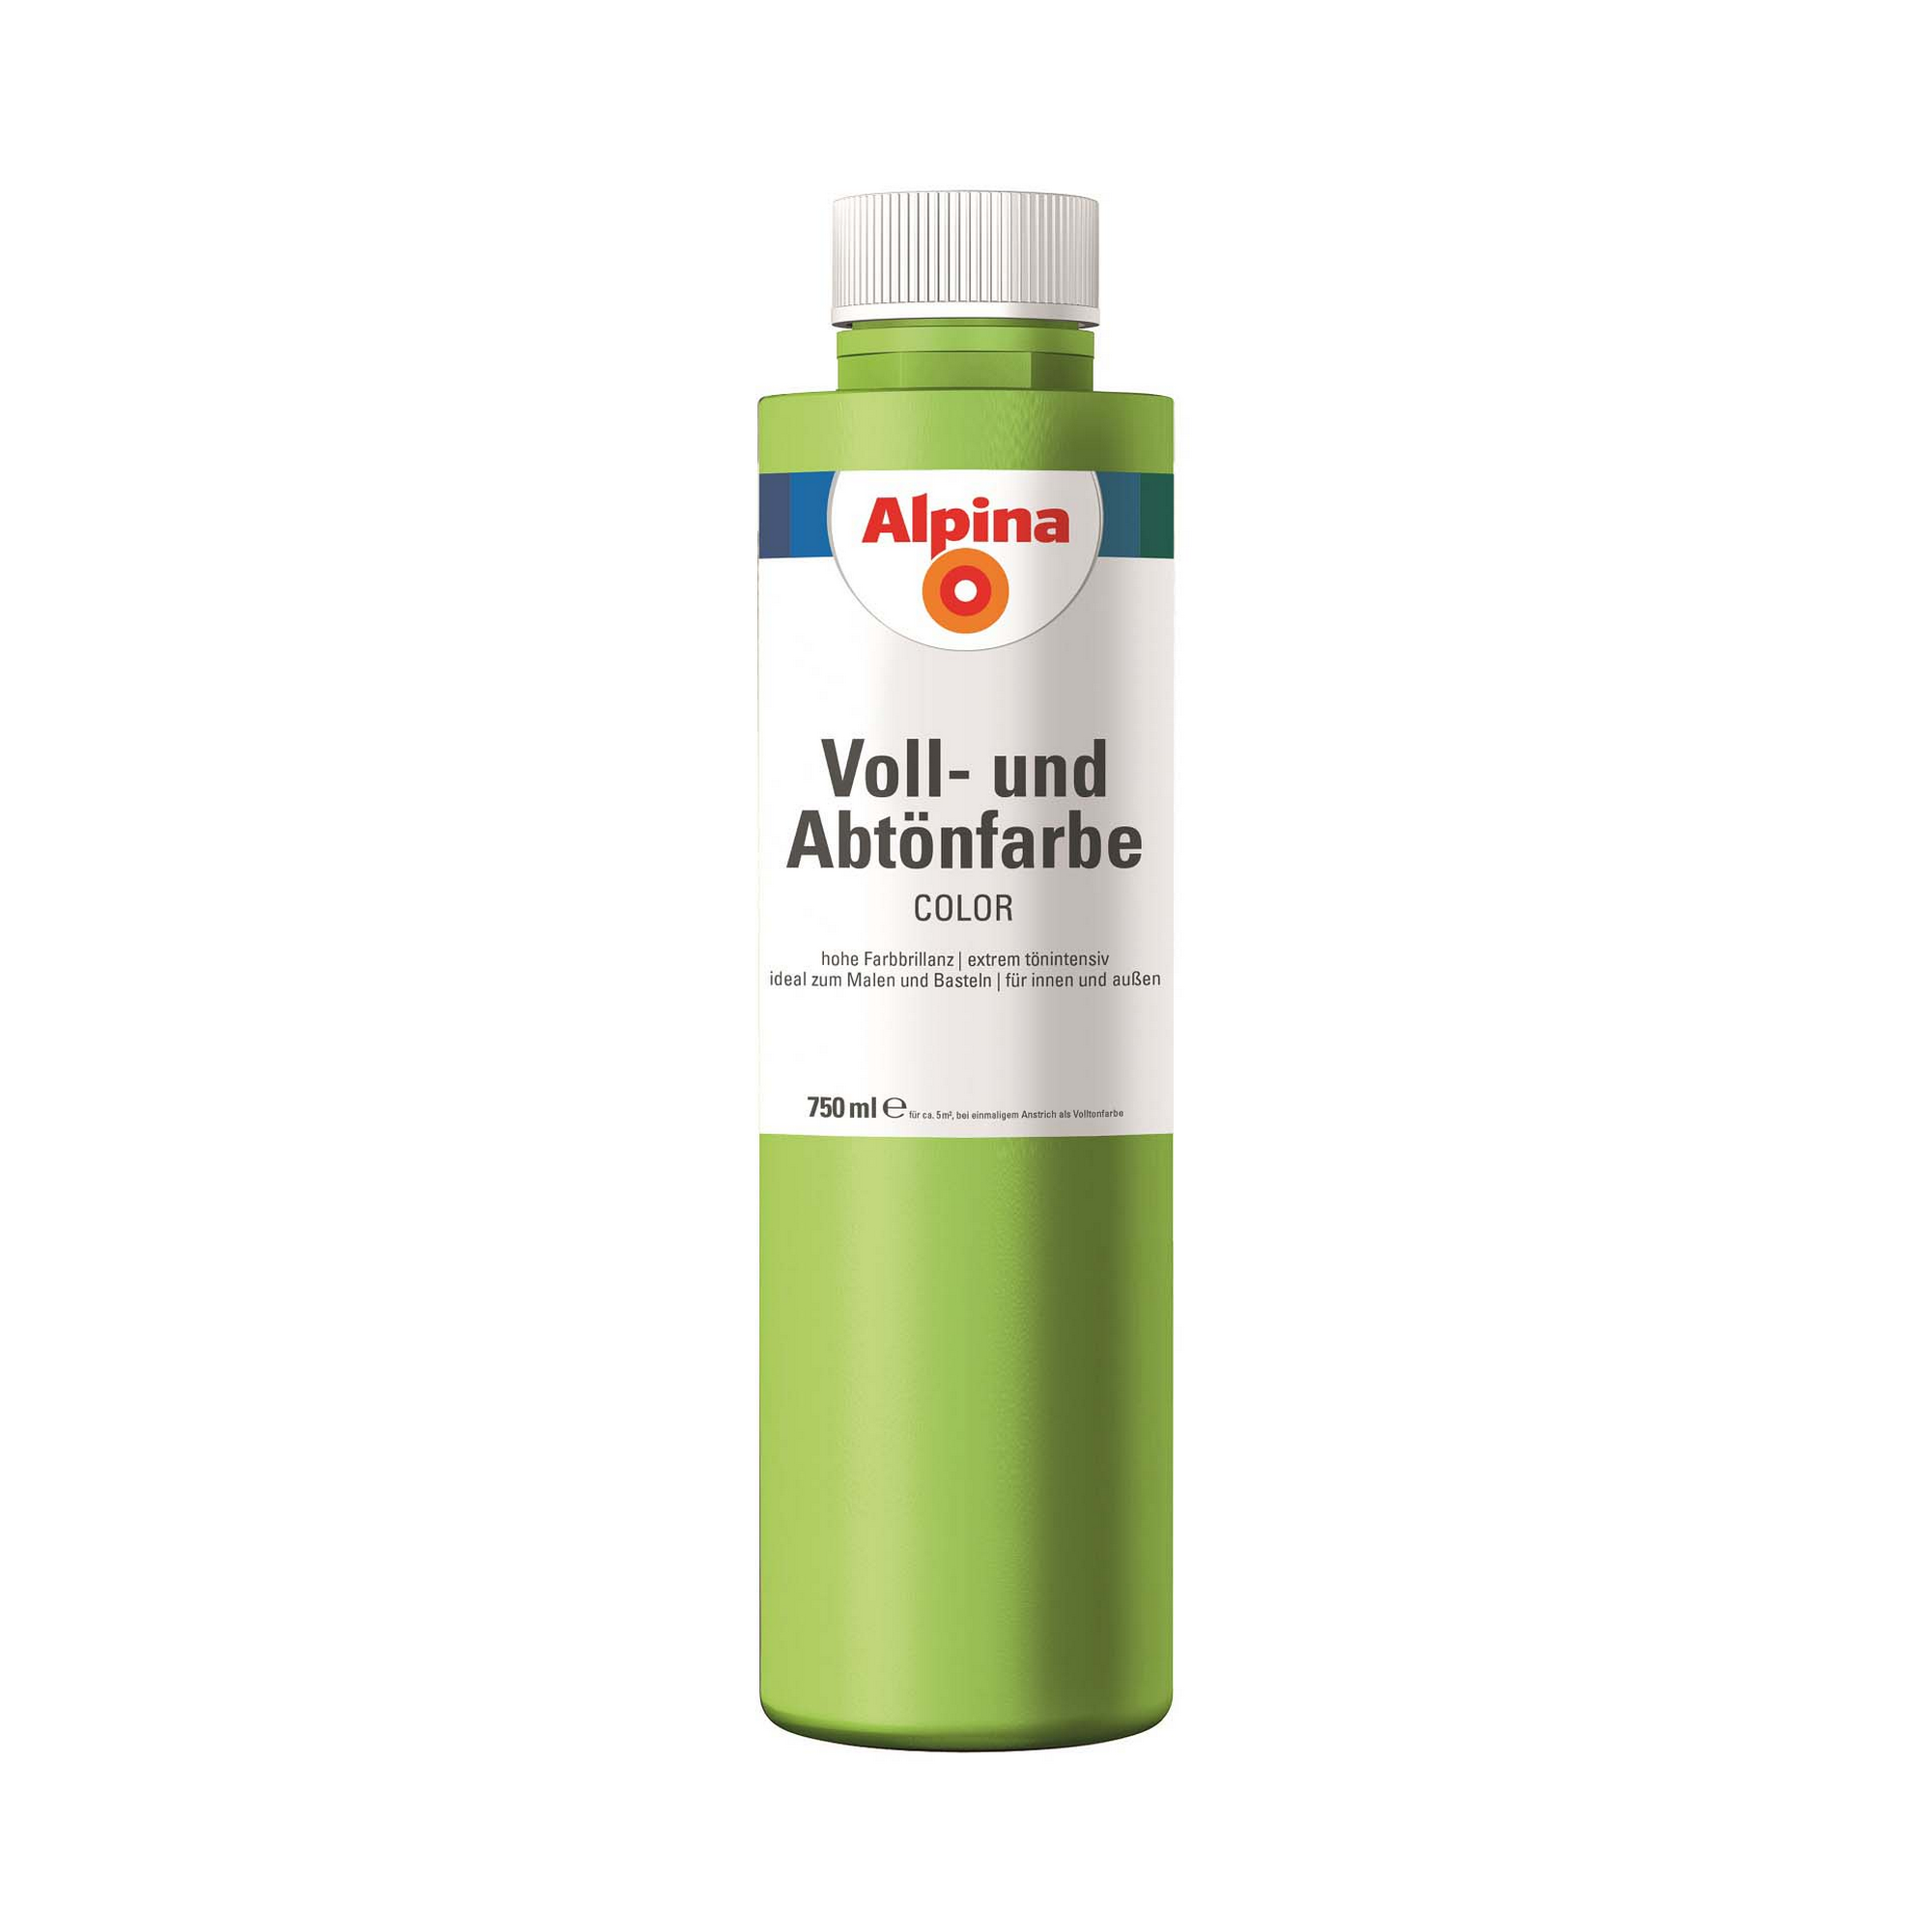 Voll- und Abtönfarbe 'Power Green' hellgrün 750 ml + product picture